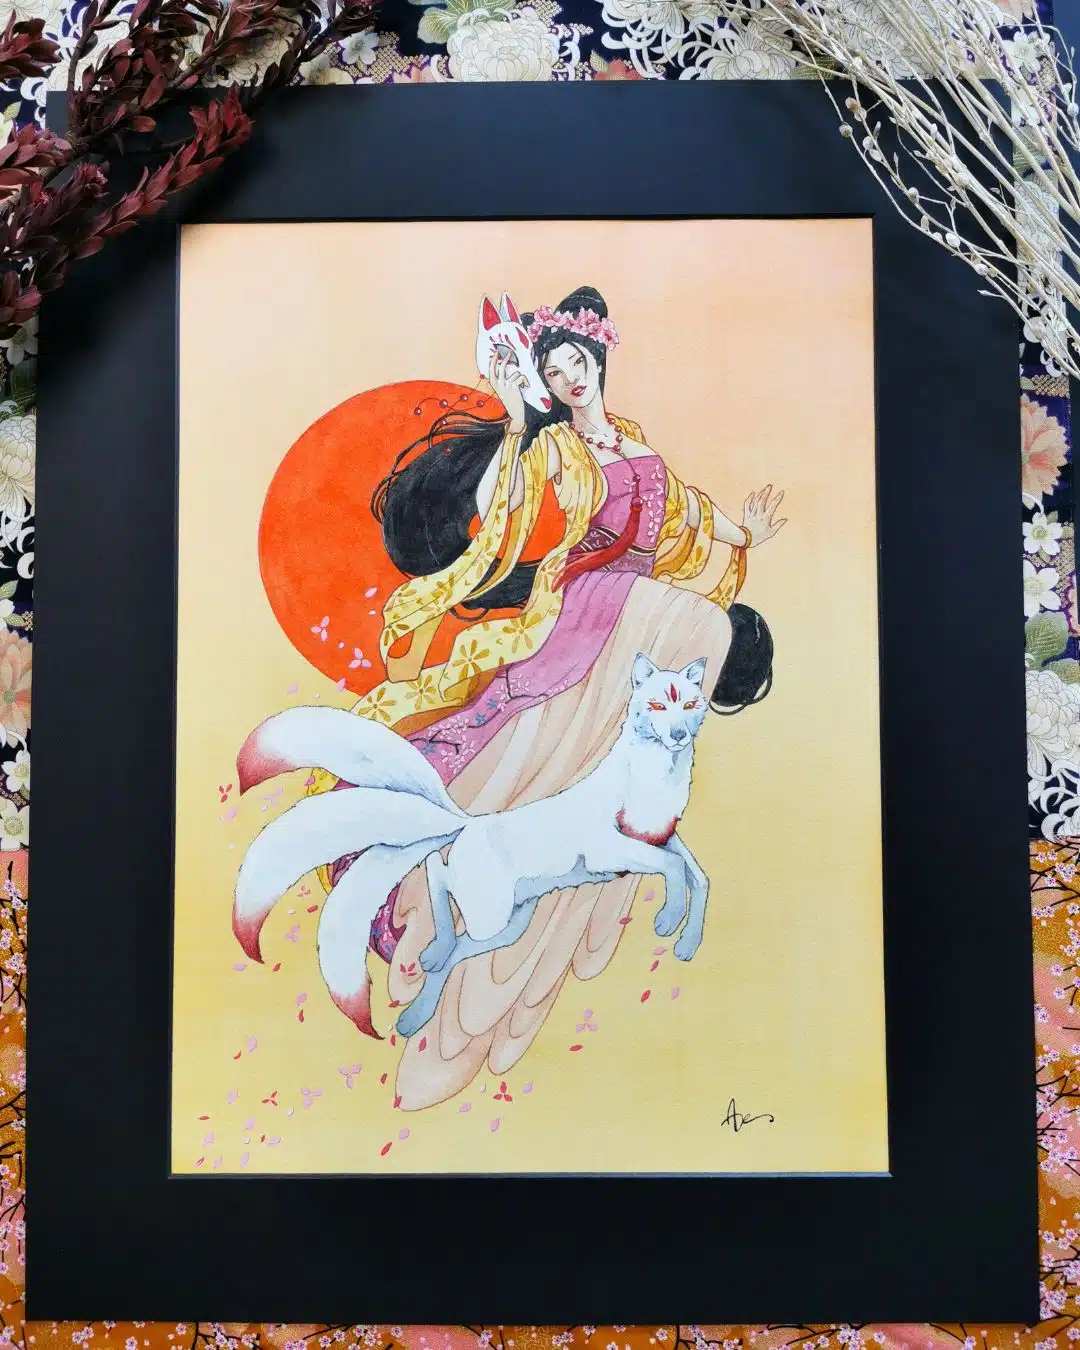 Une femme aux longs cheveux noirs flotte dans les airs devant un soleil rouge orangé. Un renard blanc marqué de rouge l'accompagne. La dame au renard blanc est une aquarelle originale issue de la collection Esprits japonais par Aemarielle. Elle incarne le kitsune.